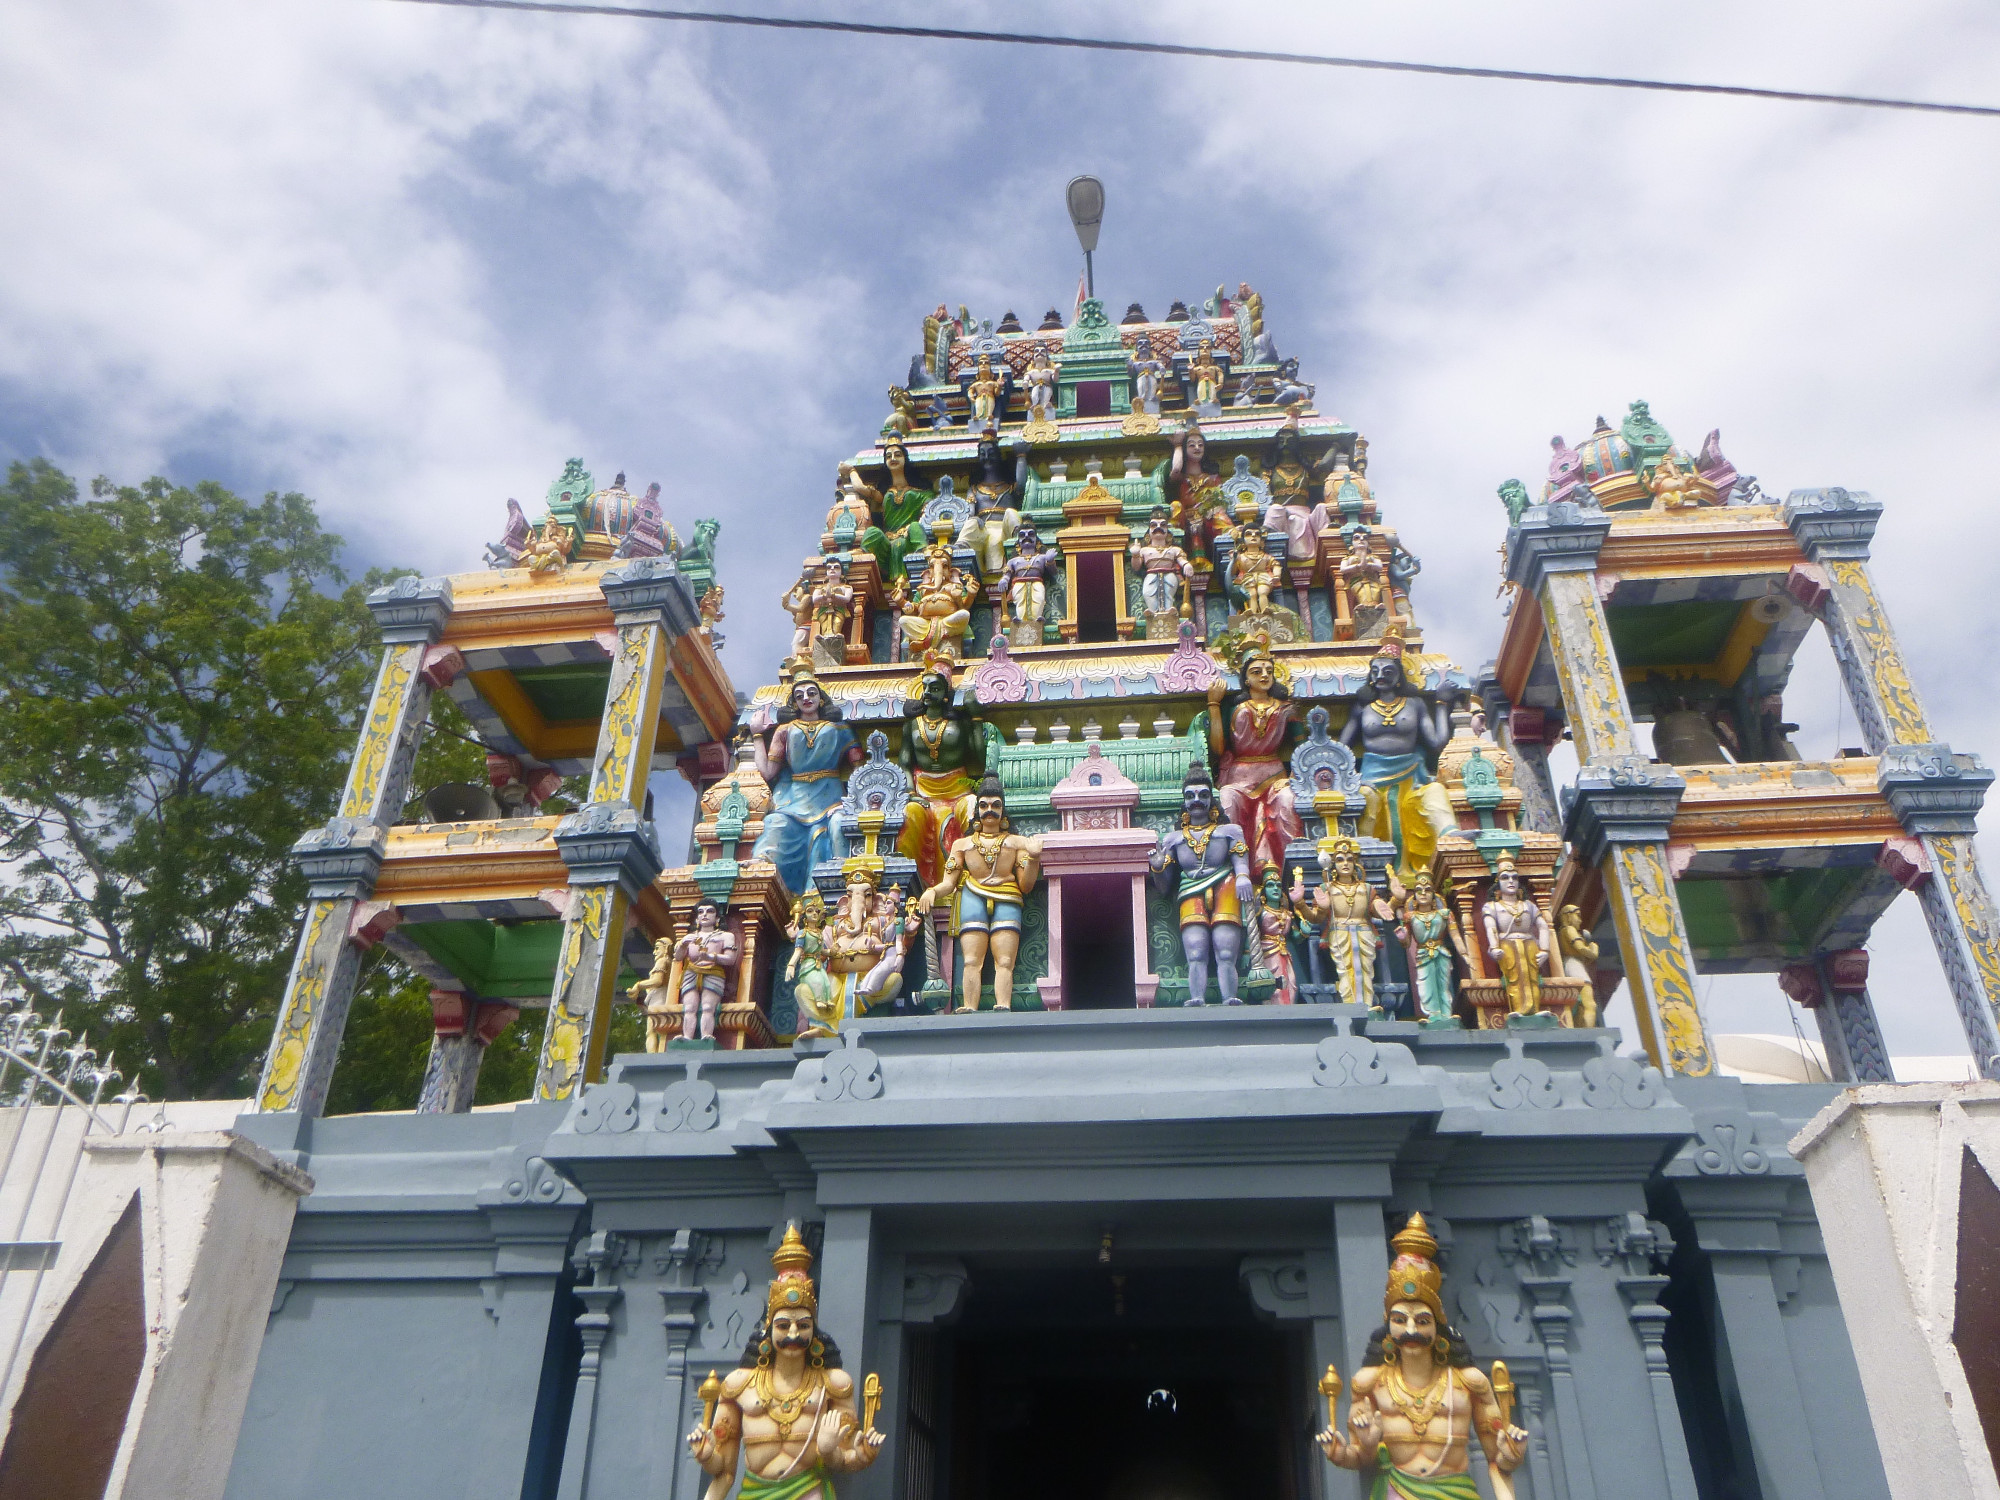 Негомбо, Шри-Ланка